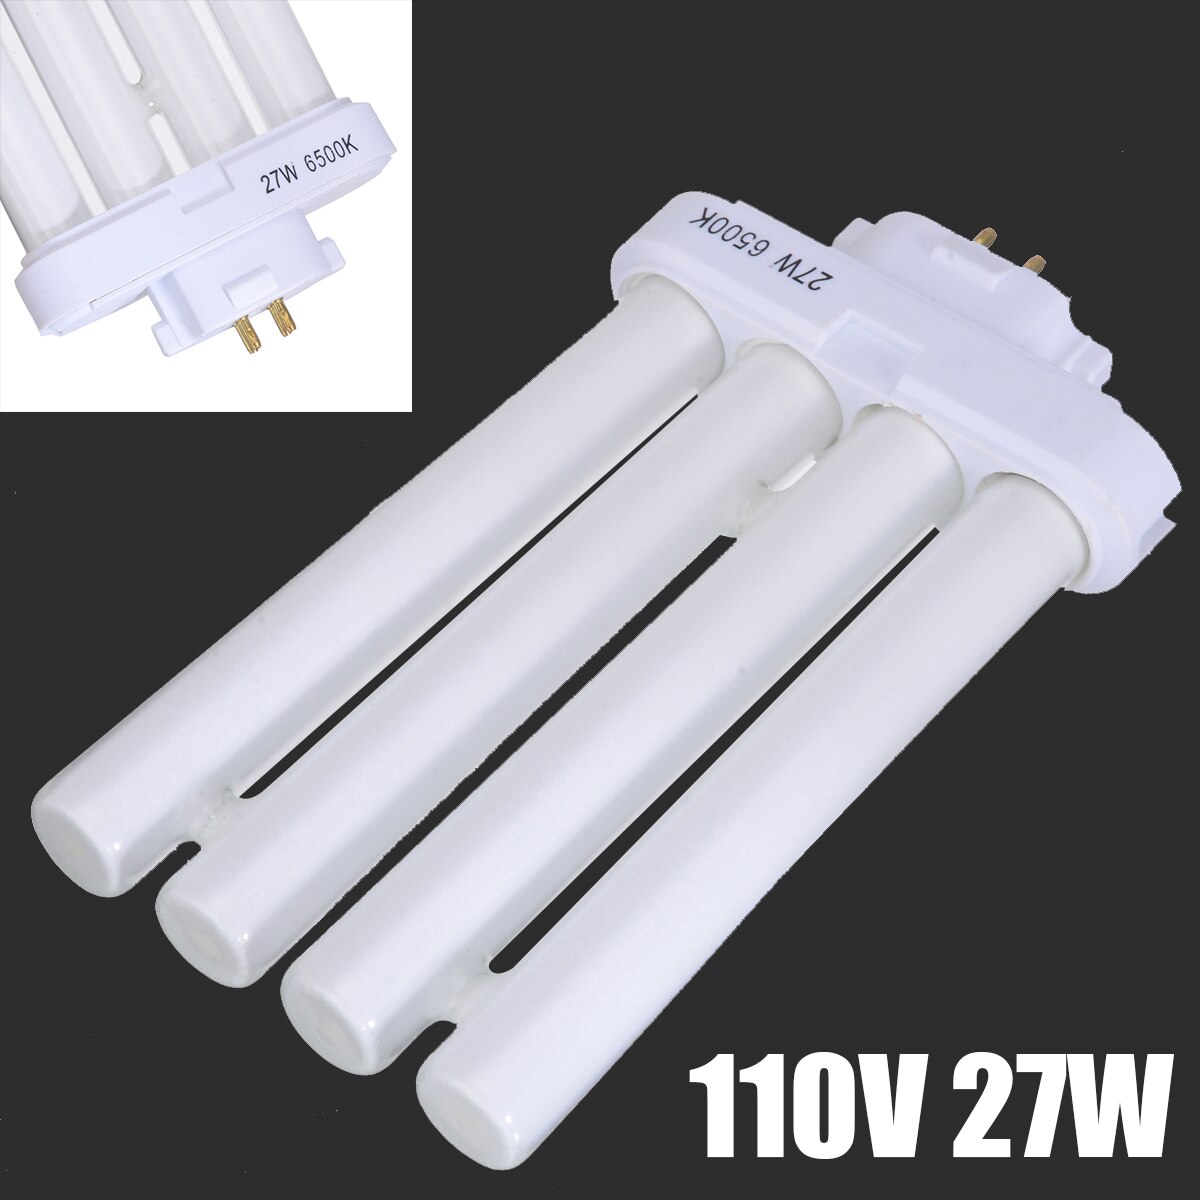 Højeffektivt energibesparende lys 27w fml 27/65k 4- pin quad tube lysstofrør ren hvide lys